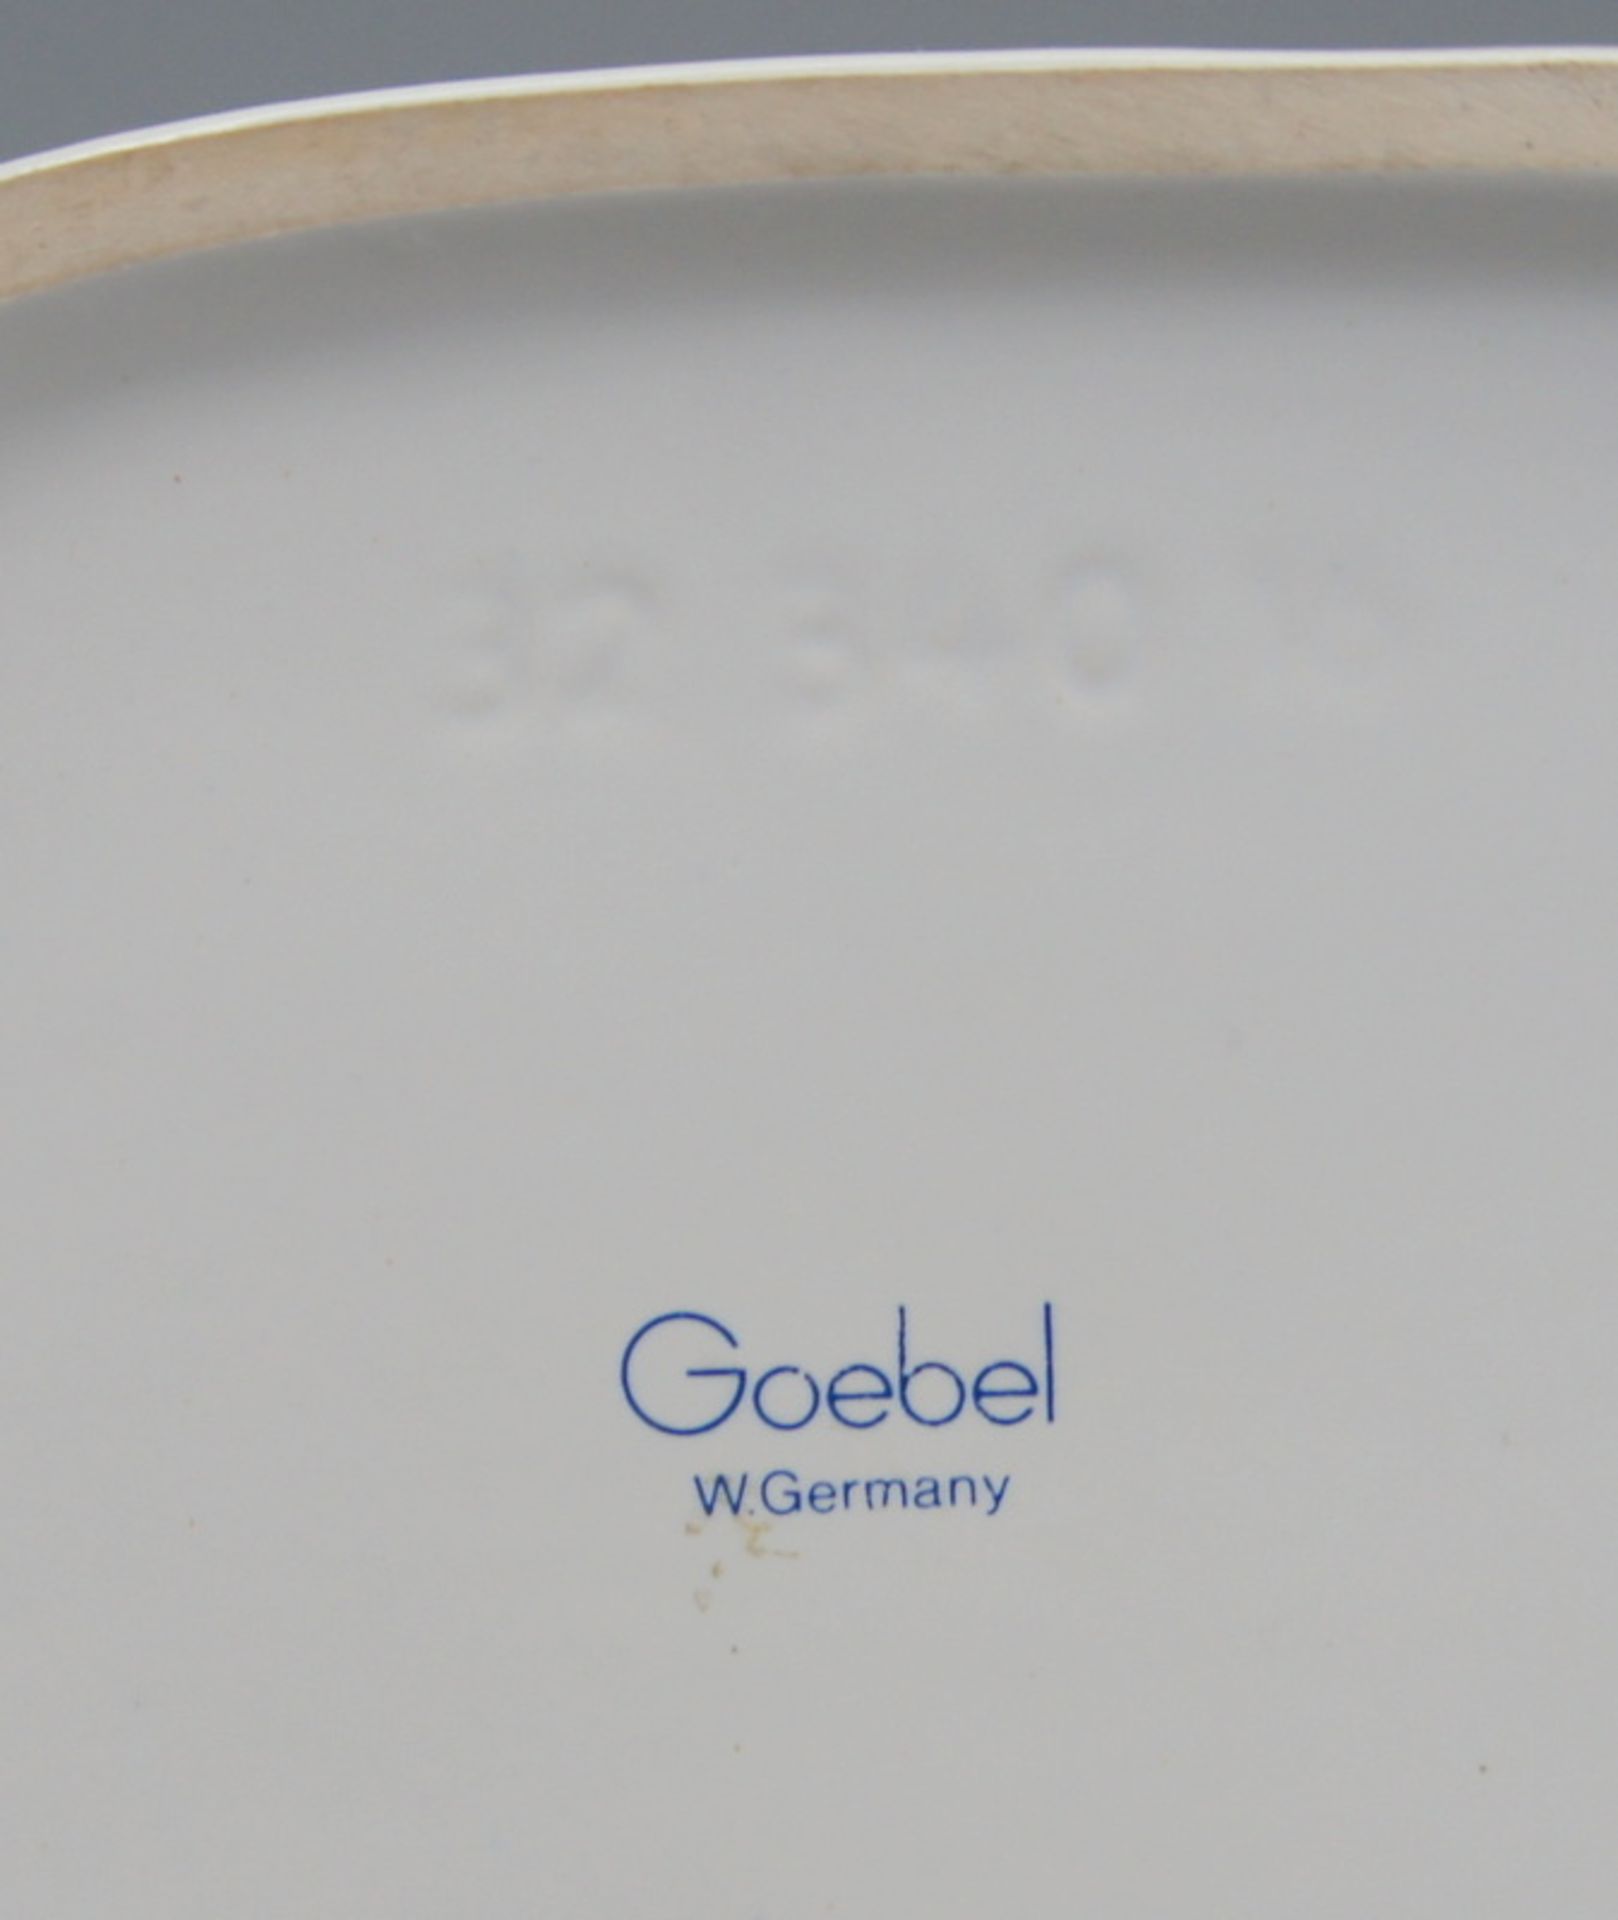 Goebel, Trabendes KaltblutPorzellan, am Boden mit blauer "Goebel Germany" Marke. Weißfigur eines - Bild 3 aus 3